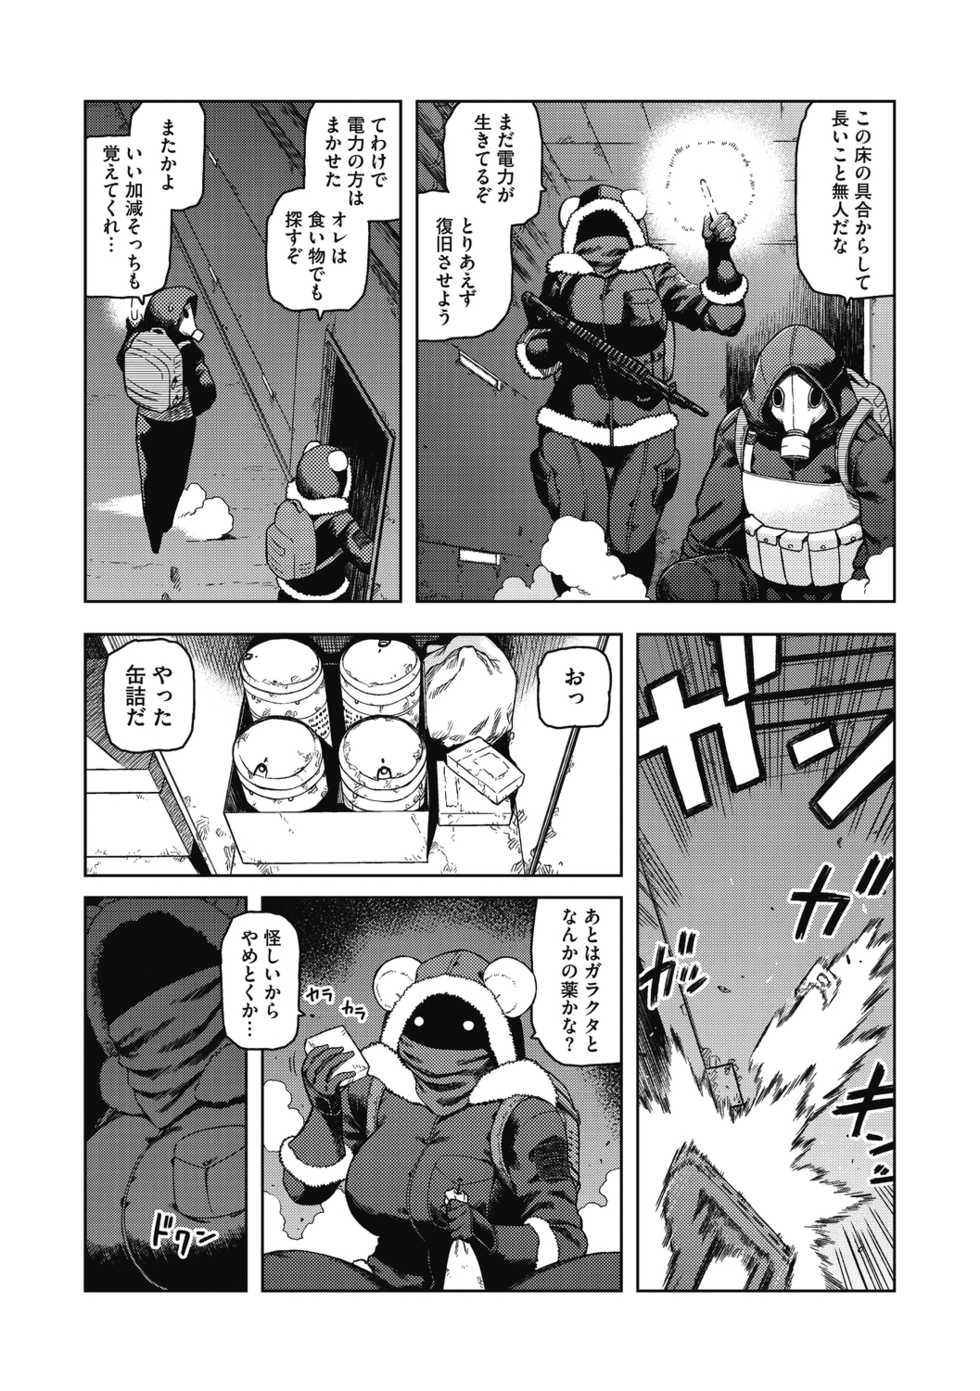 [Tsukudani] I shuwa kān ★ kabegami omake-tsuki [Digital] - Page 31